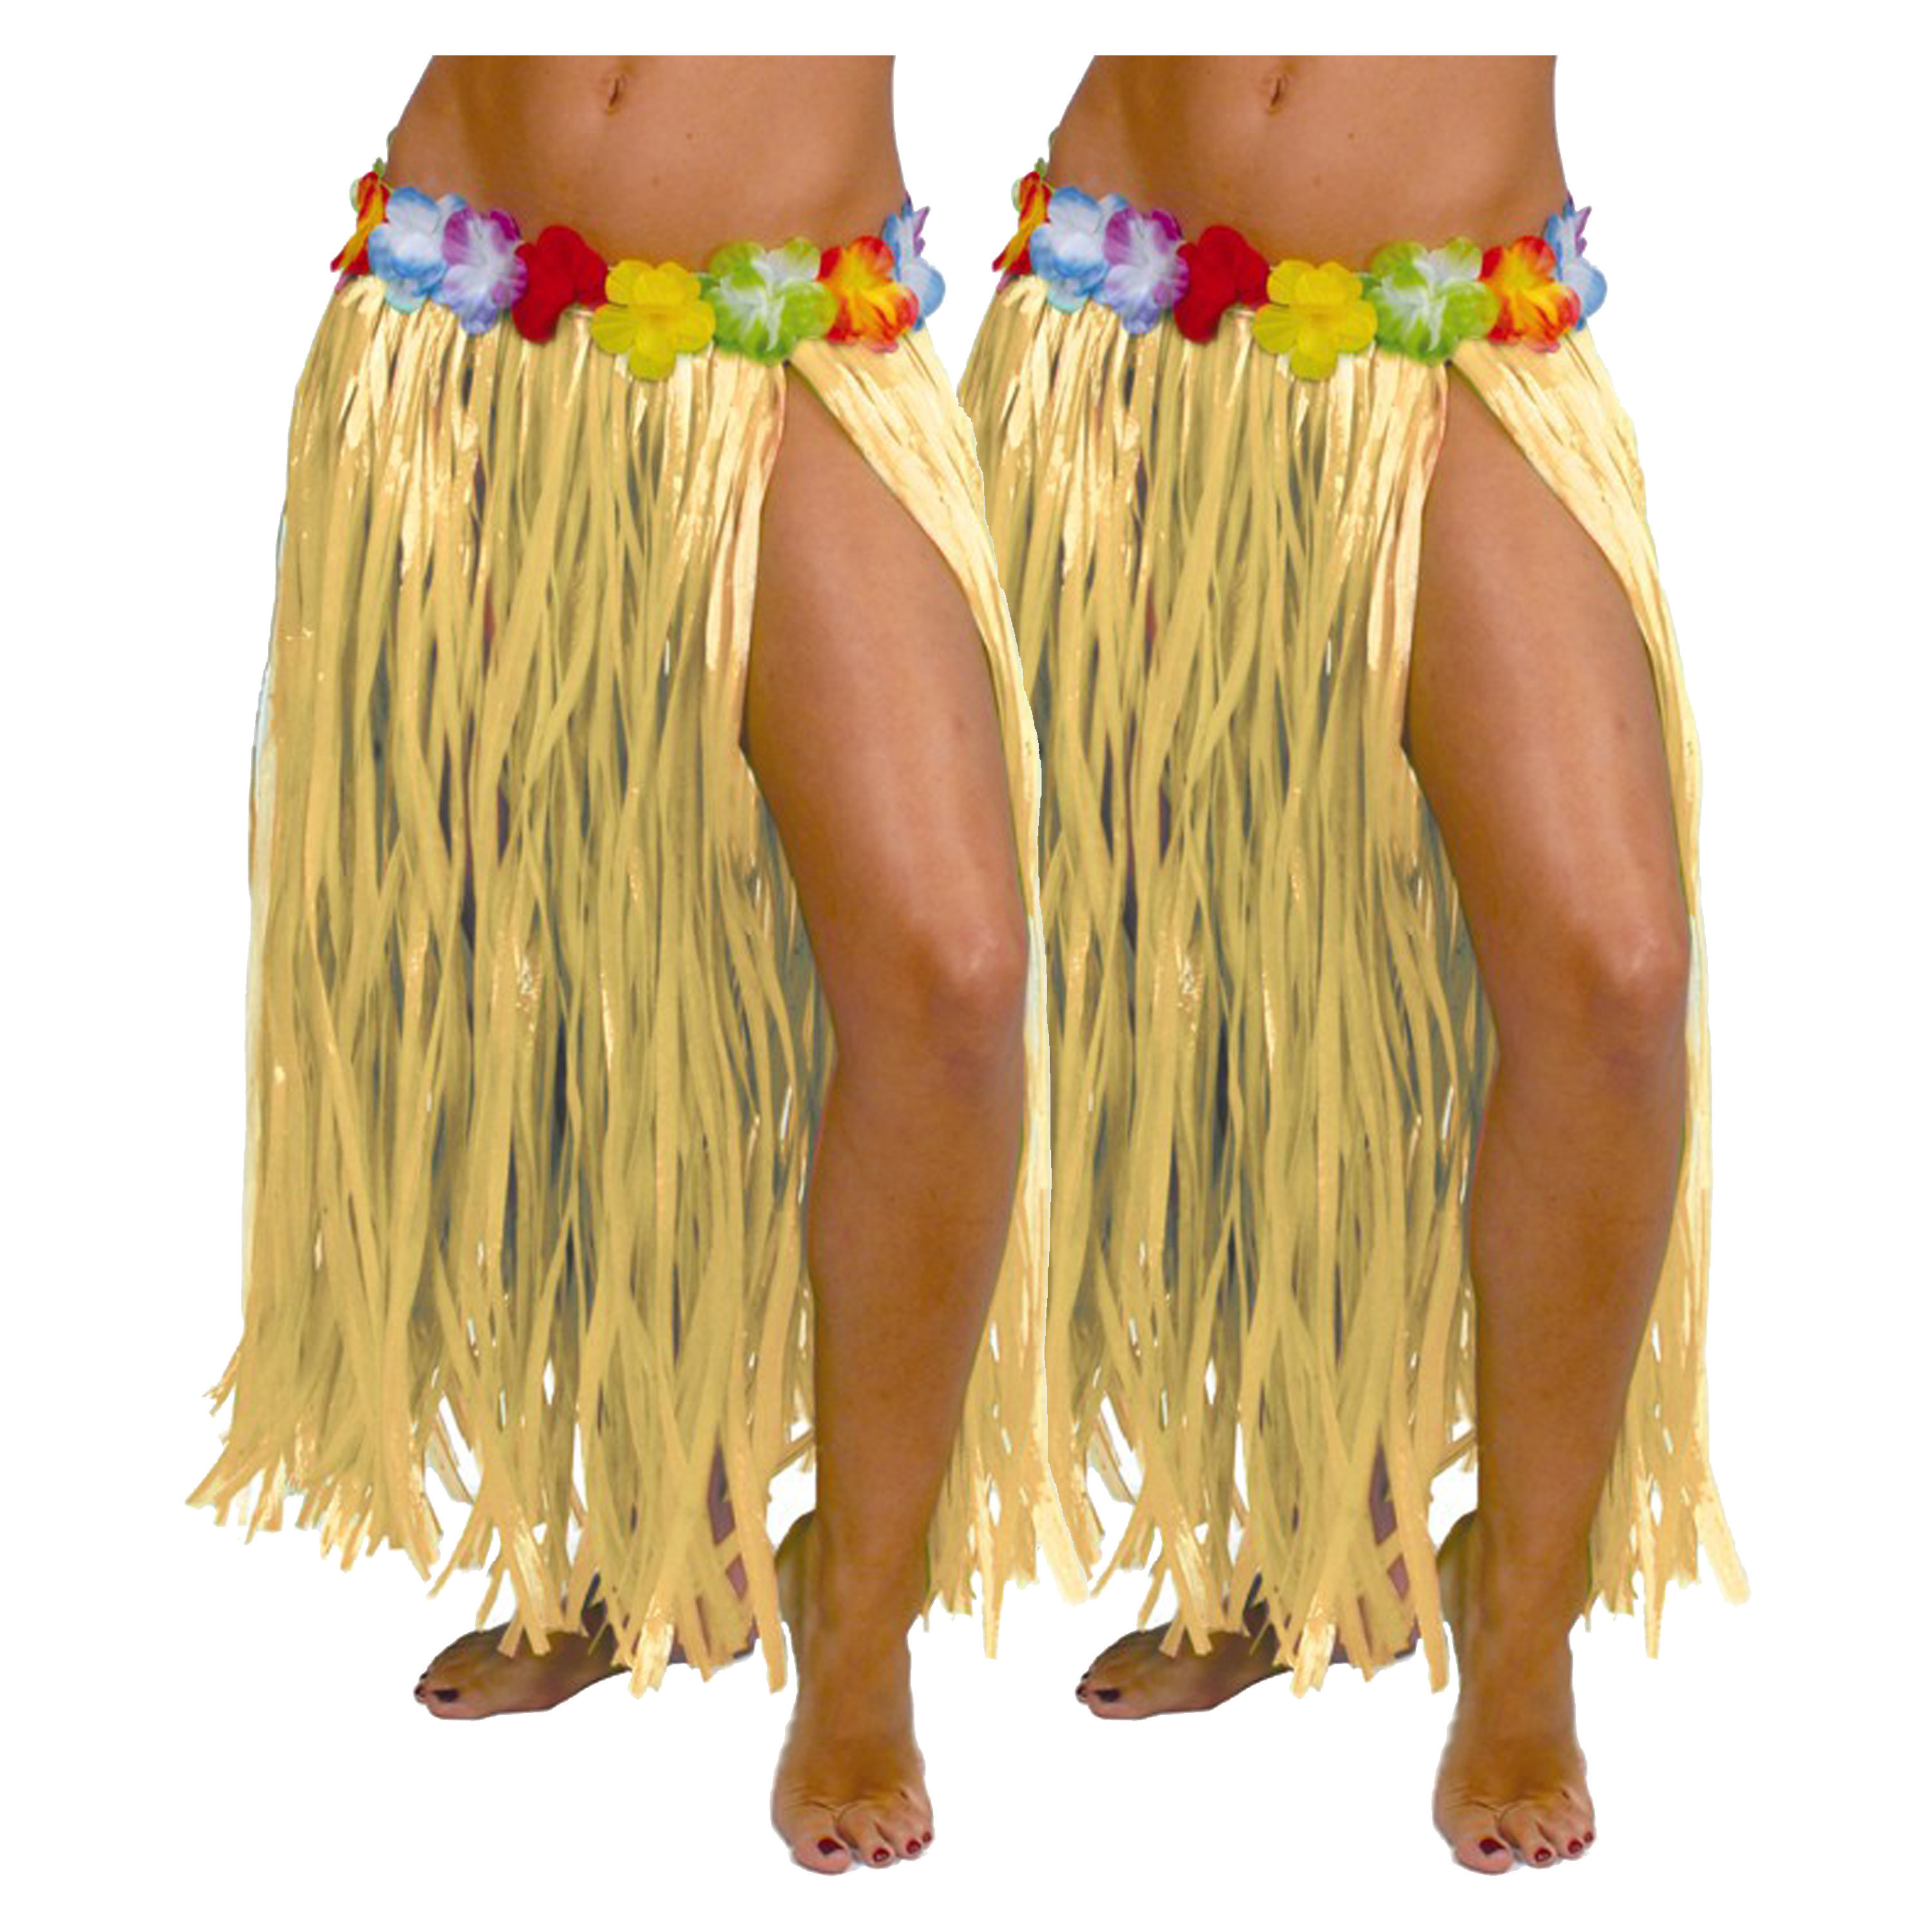 Hawaii verkleed rokje - 2x - voor volwassenen - naturel - 75 cm - rieten hoela rokje - tropisch